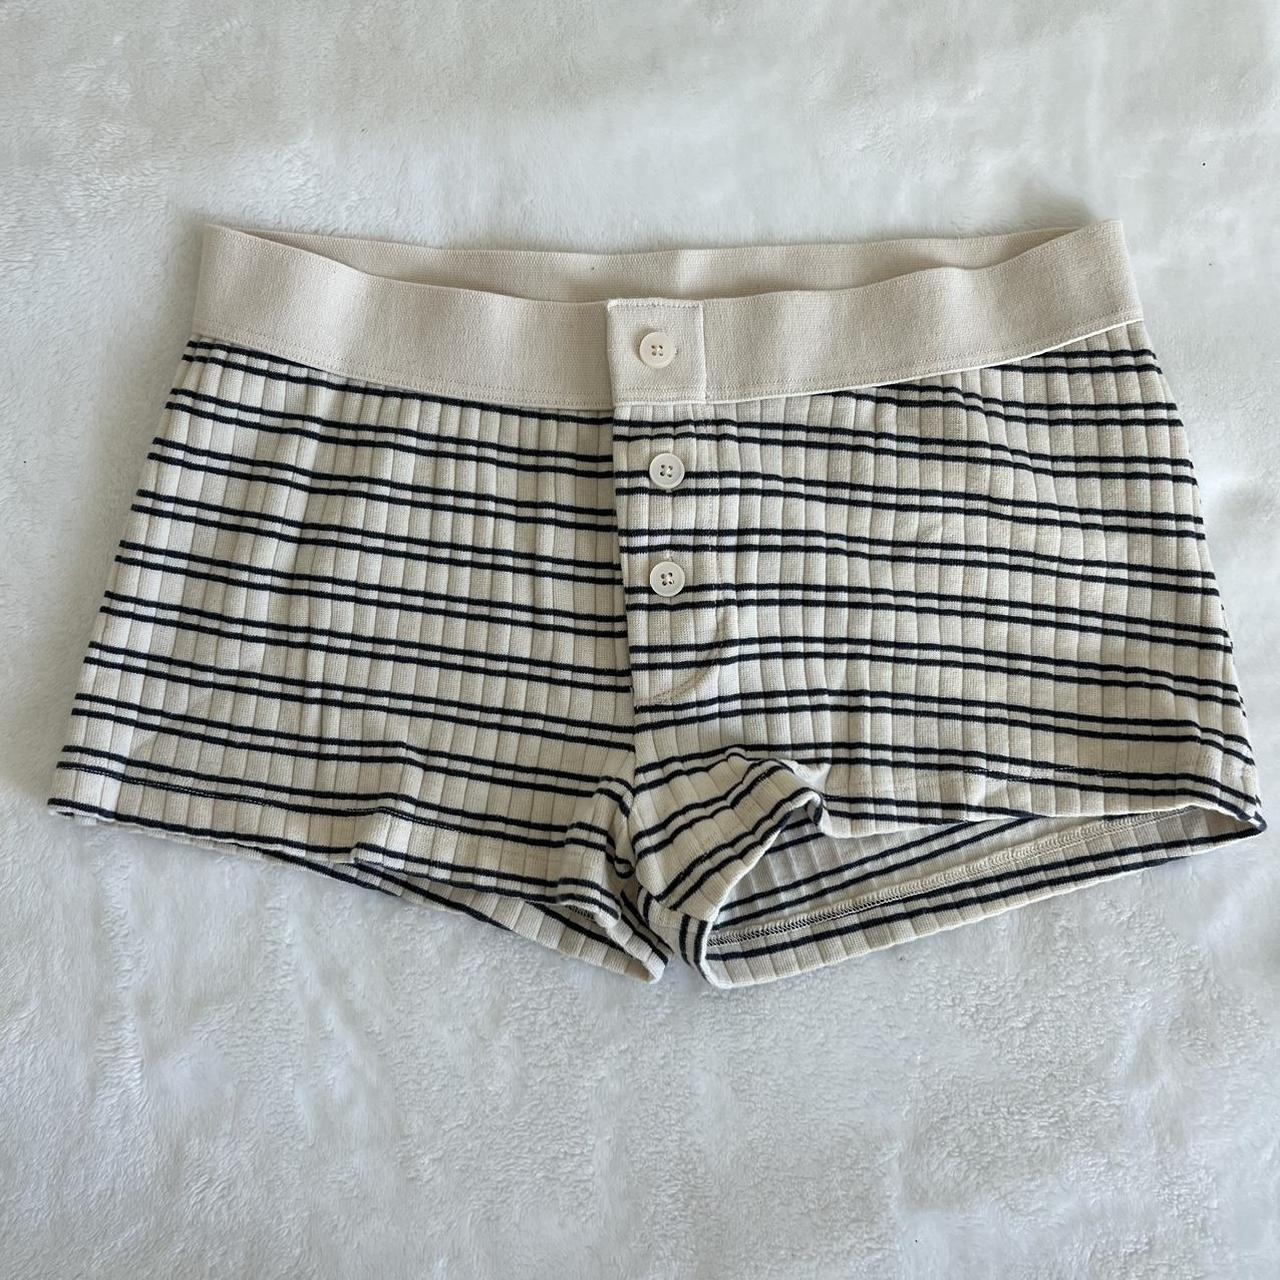 Boy Short Stripe Underwear – Brandy Melville